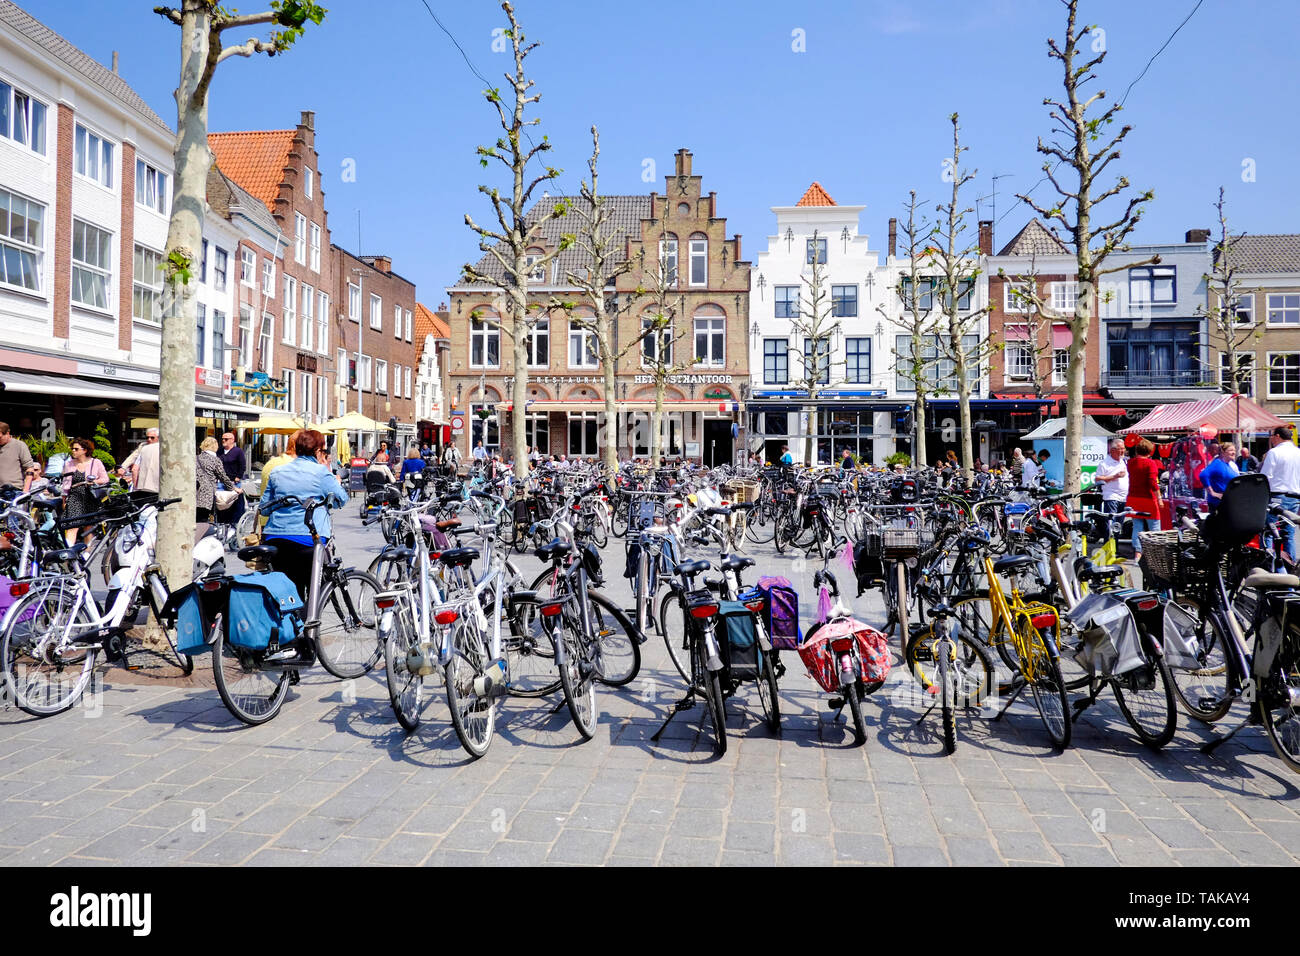 Street view en néerlandais typique va, une place du marché avec beaucoup de vélos en stationnement et caractéristique des bâtiments du 17ème siècle Banque D'Images